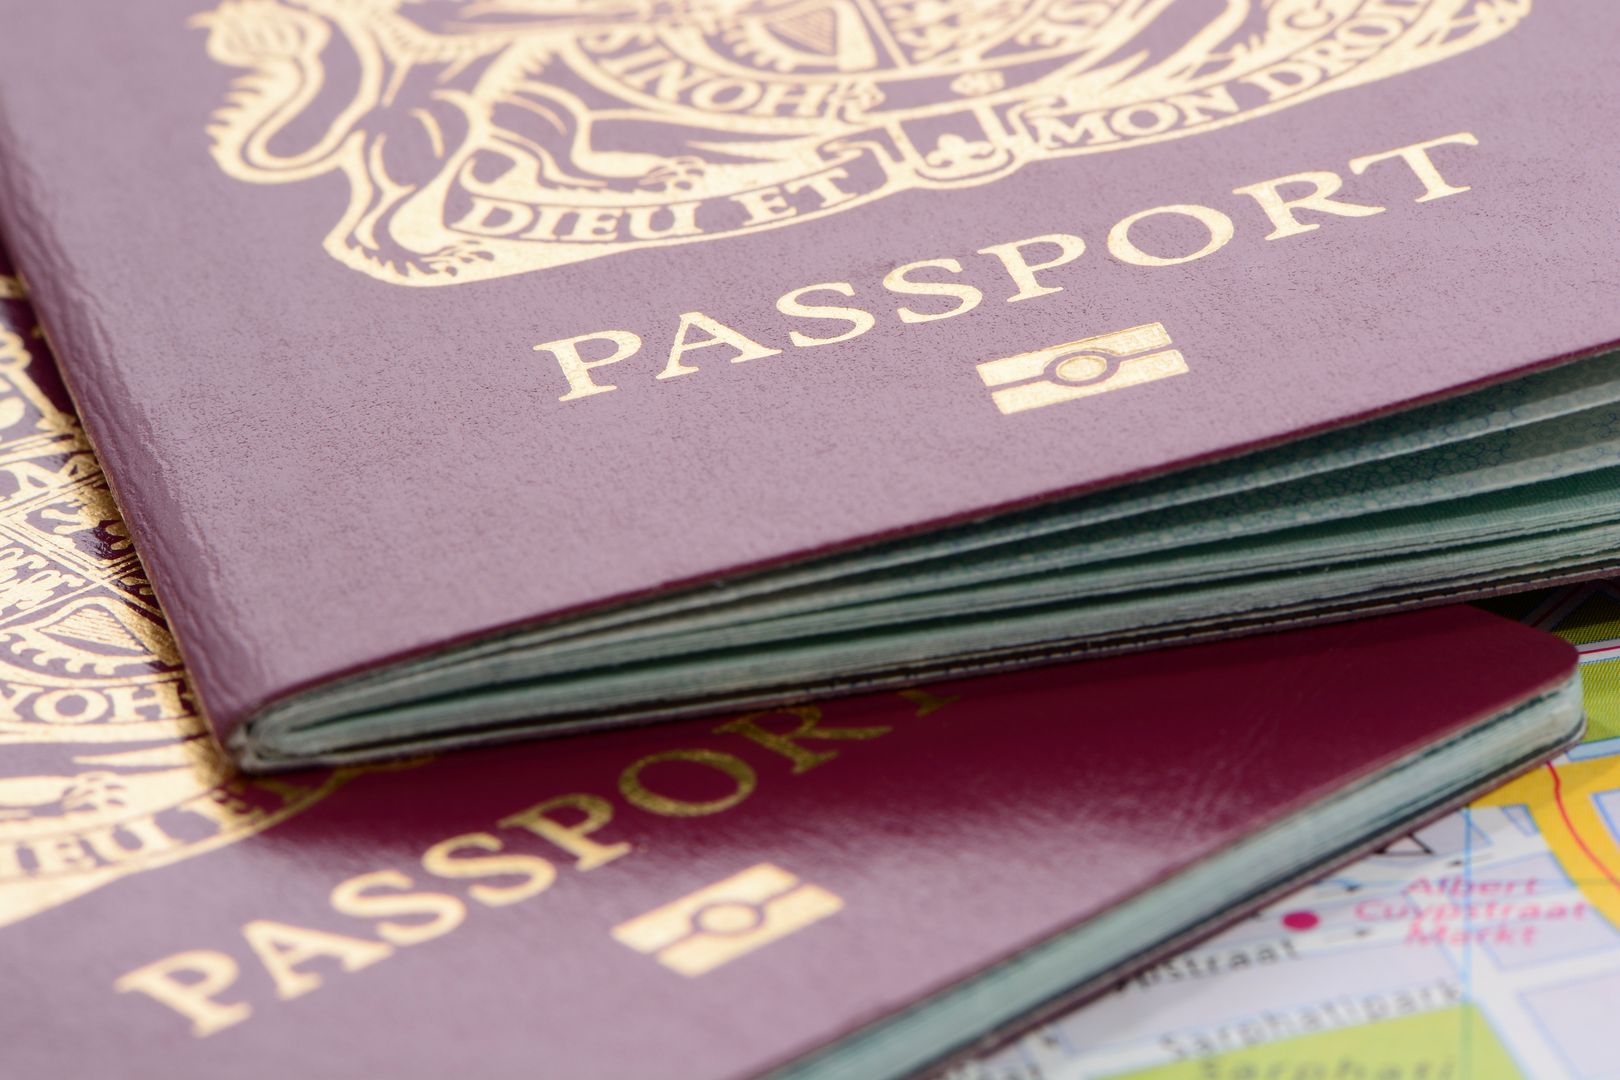 Wielka Brytania wymazała Unię Europejską z paszportów